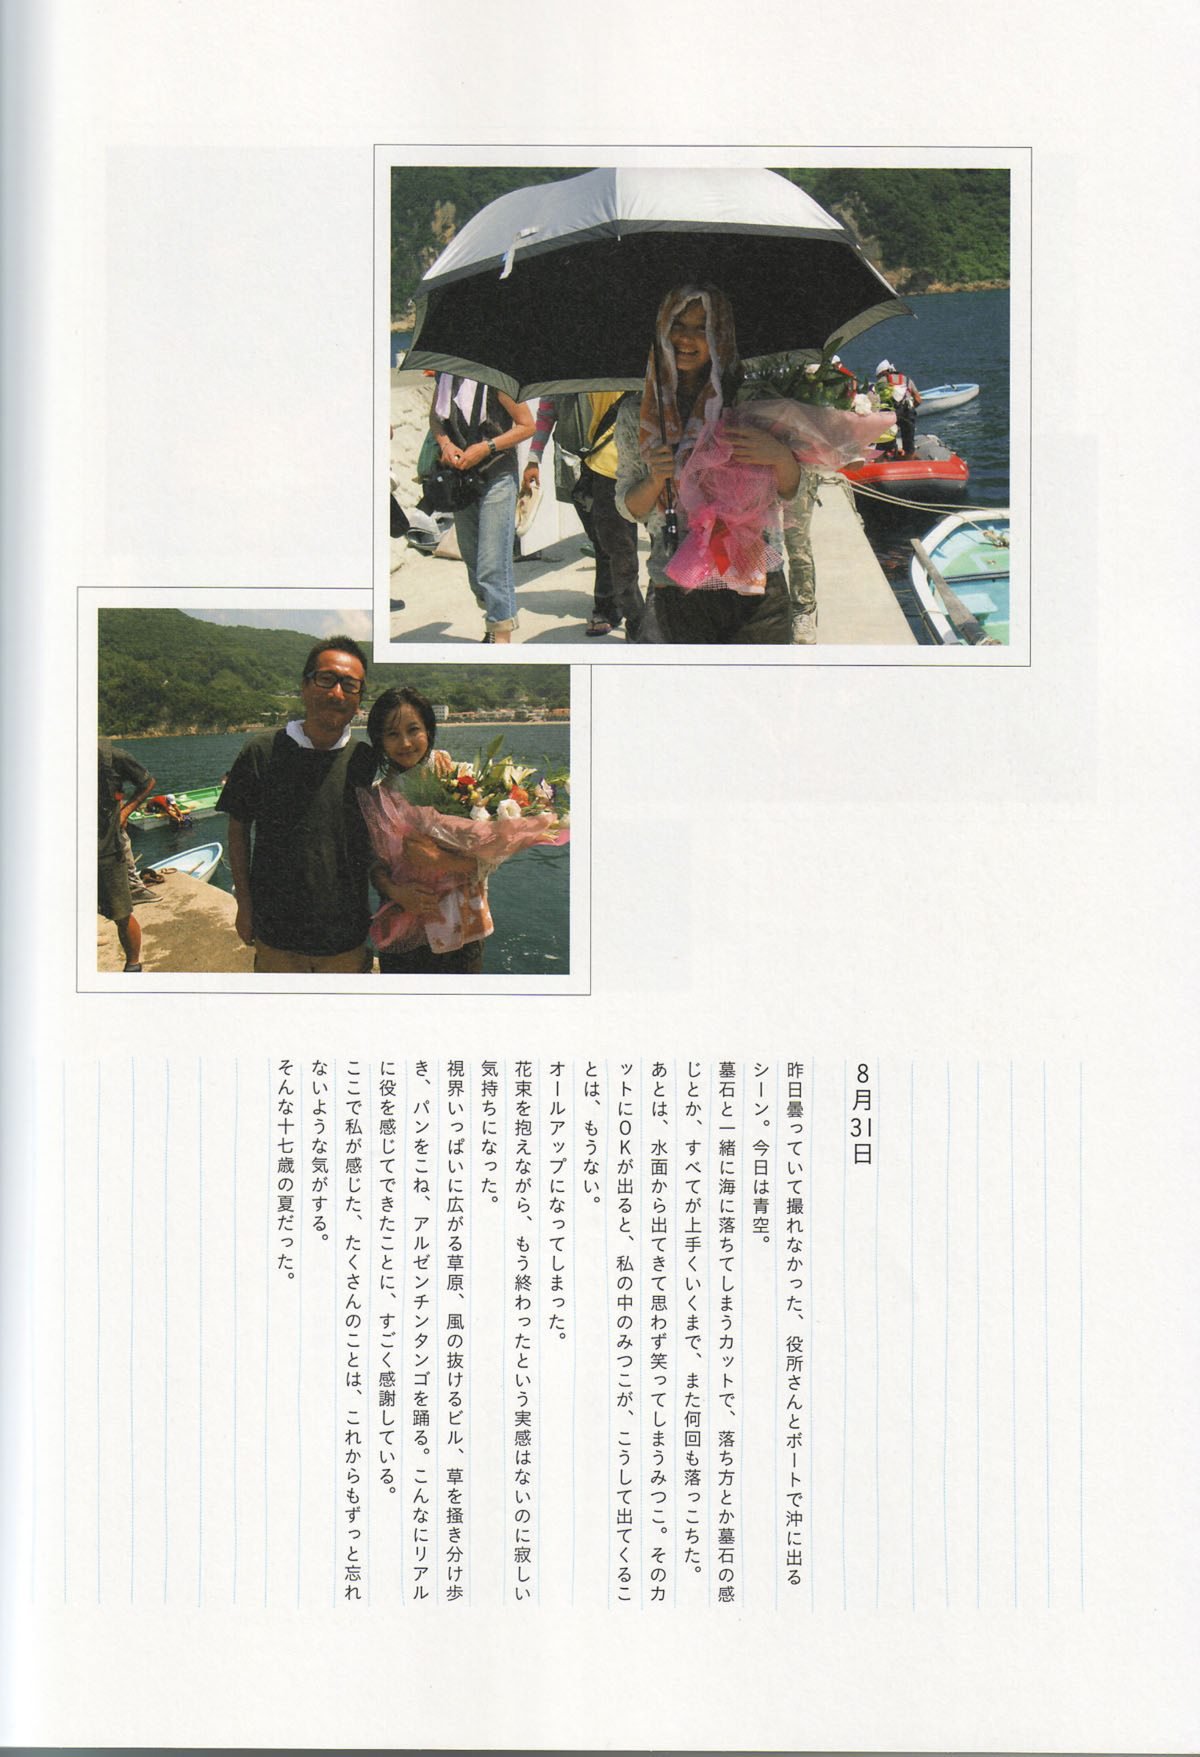 Photobook Maki Horikita 堀北真希 Cinematic 2007 03 07 0021 8702097477.jpg